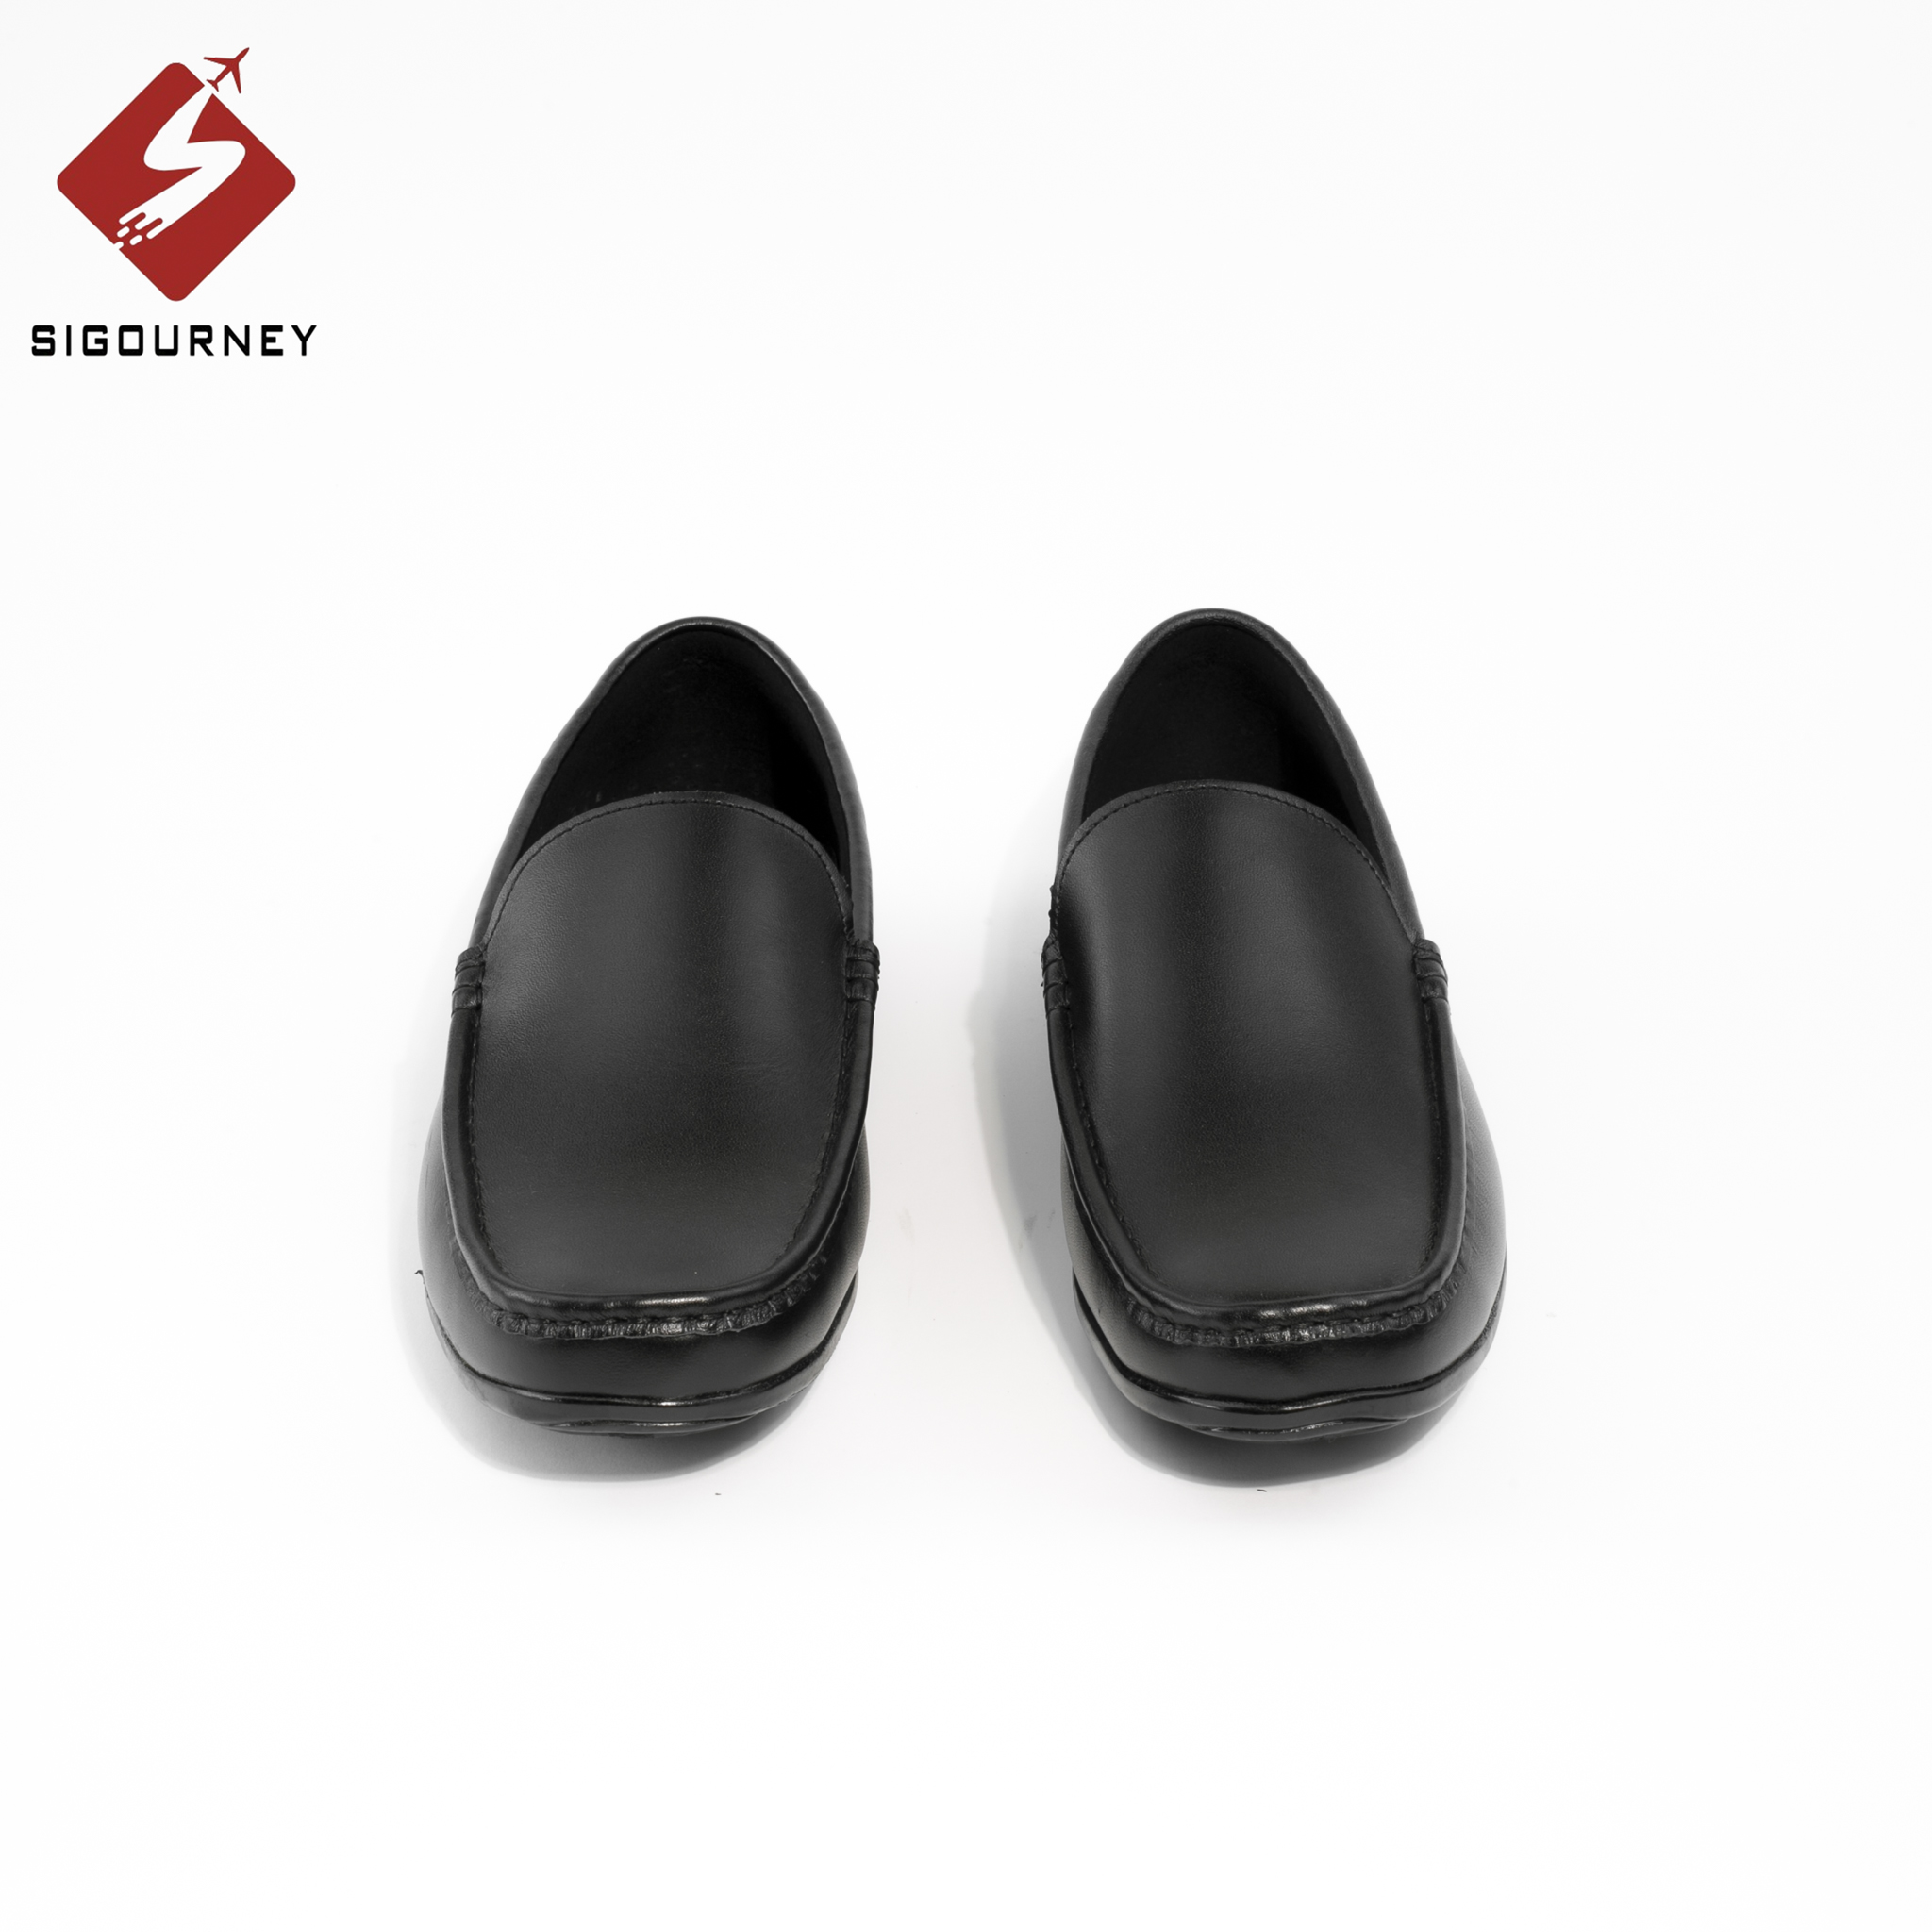 Giày Lười Nam Da Bò Dành Cho Giới Công Sở SIGOURNEY Màu Đen SIG-08 Giày Mọi Nam Giá Rẻ Bảo Hành 18 Tháng